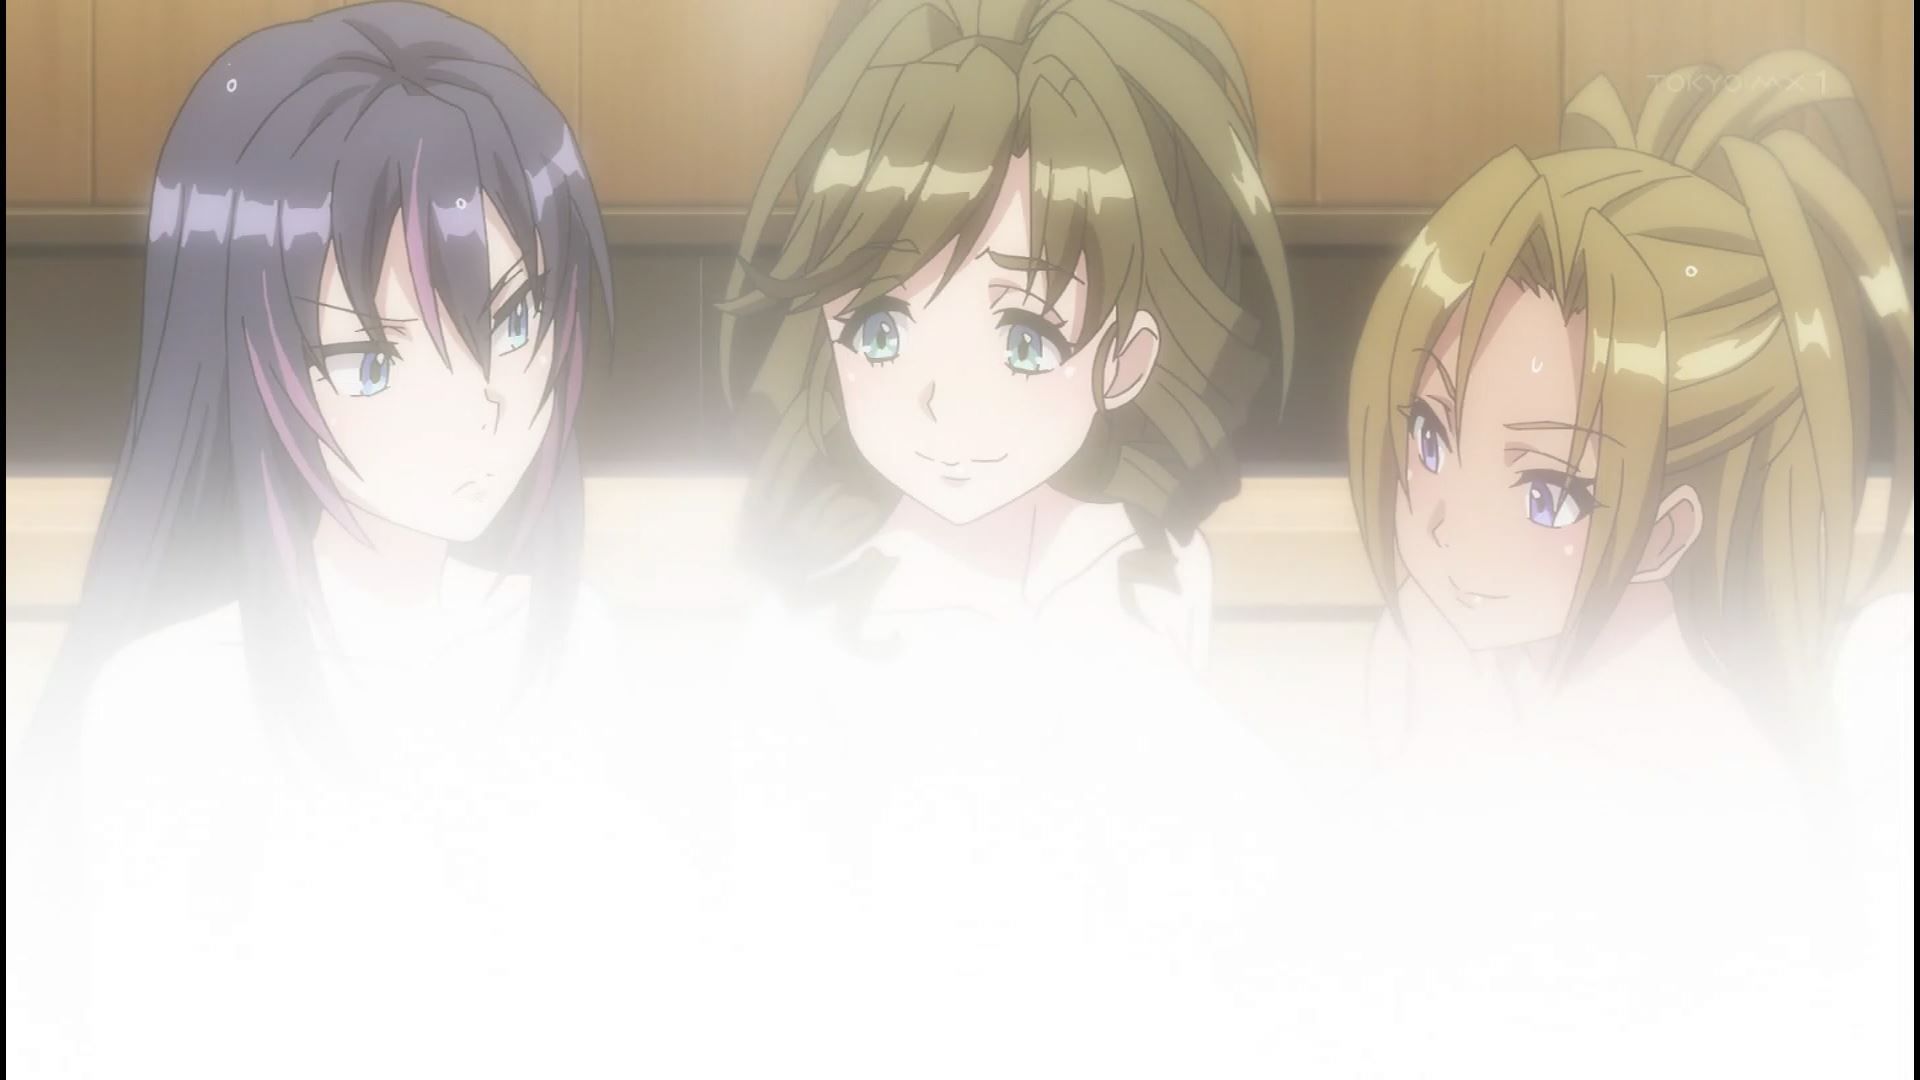 Anime [Kandagawa JETGIRLS] 8 episodes of girls erotic round-view bath bathing scene! 24